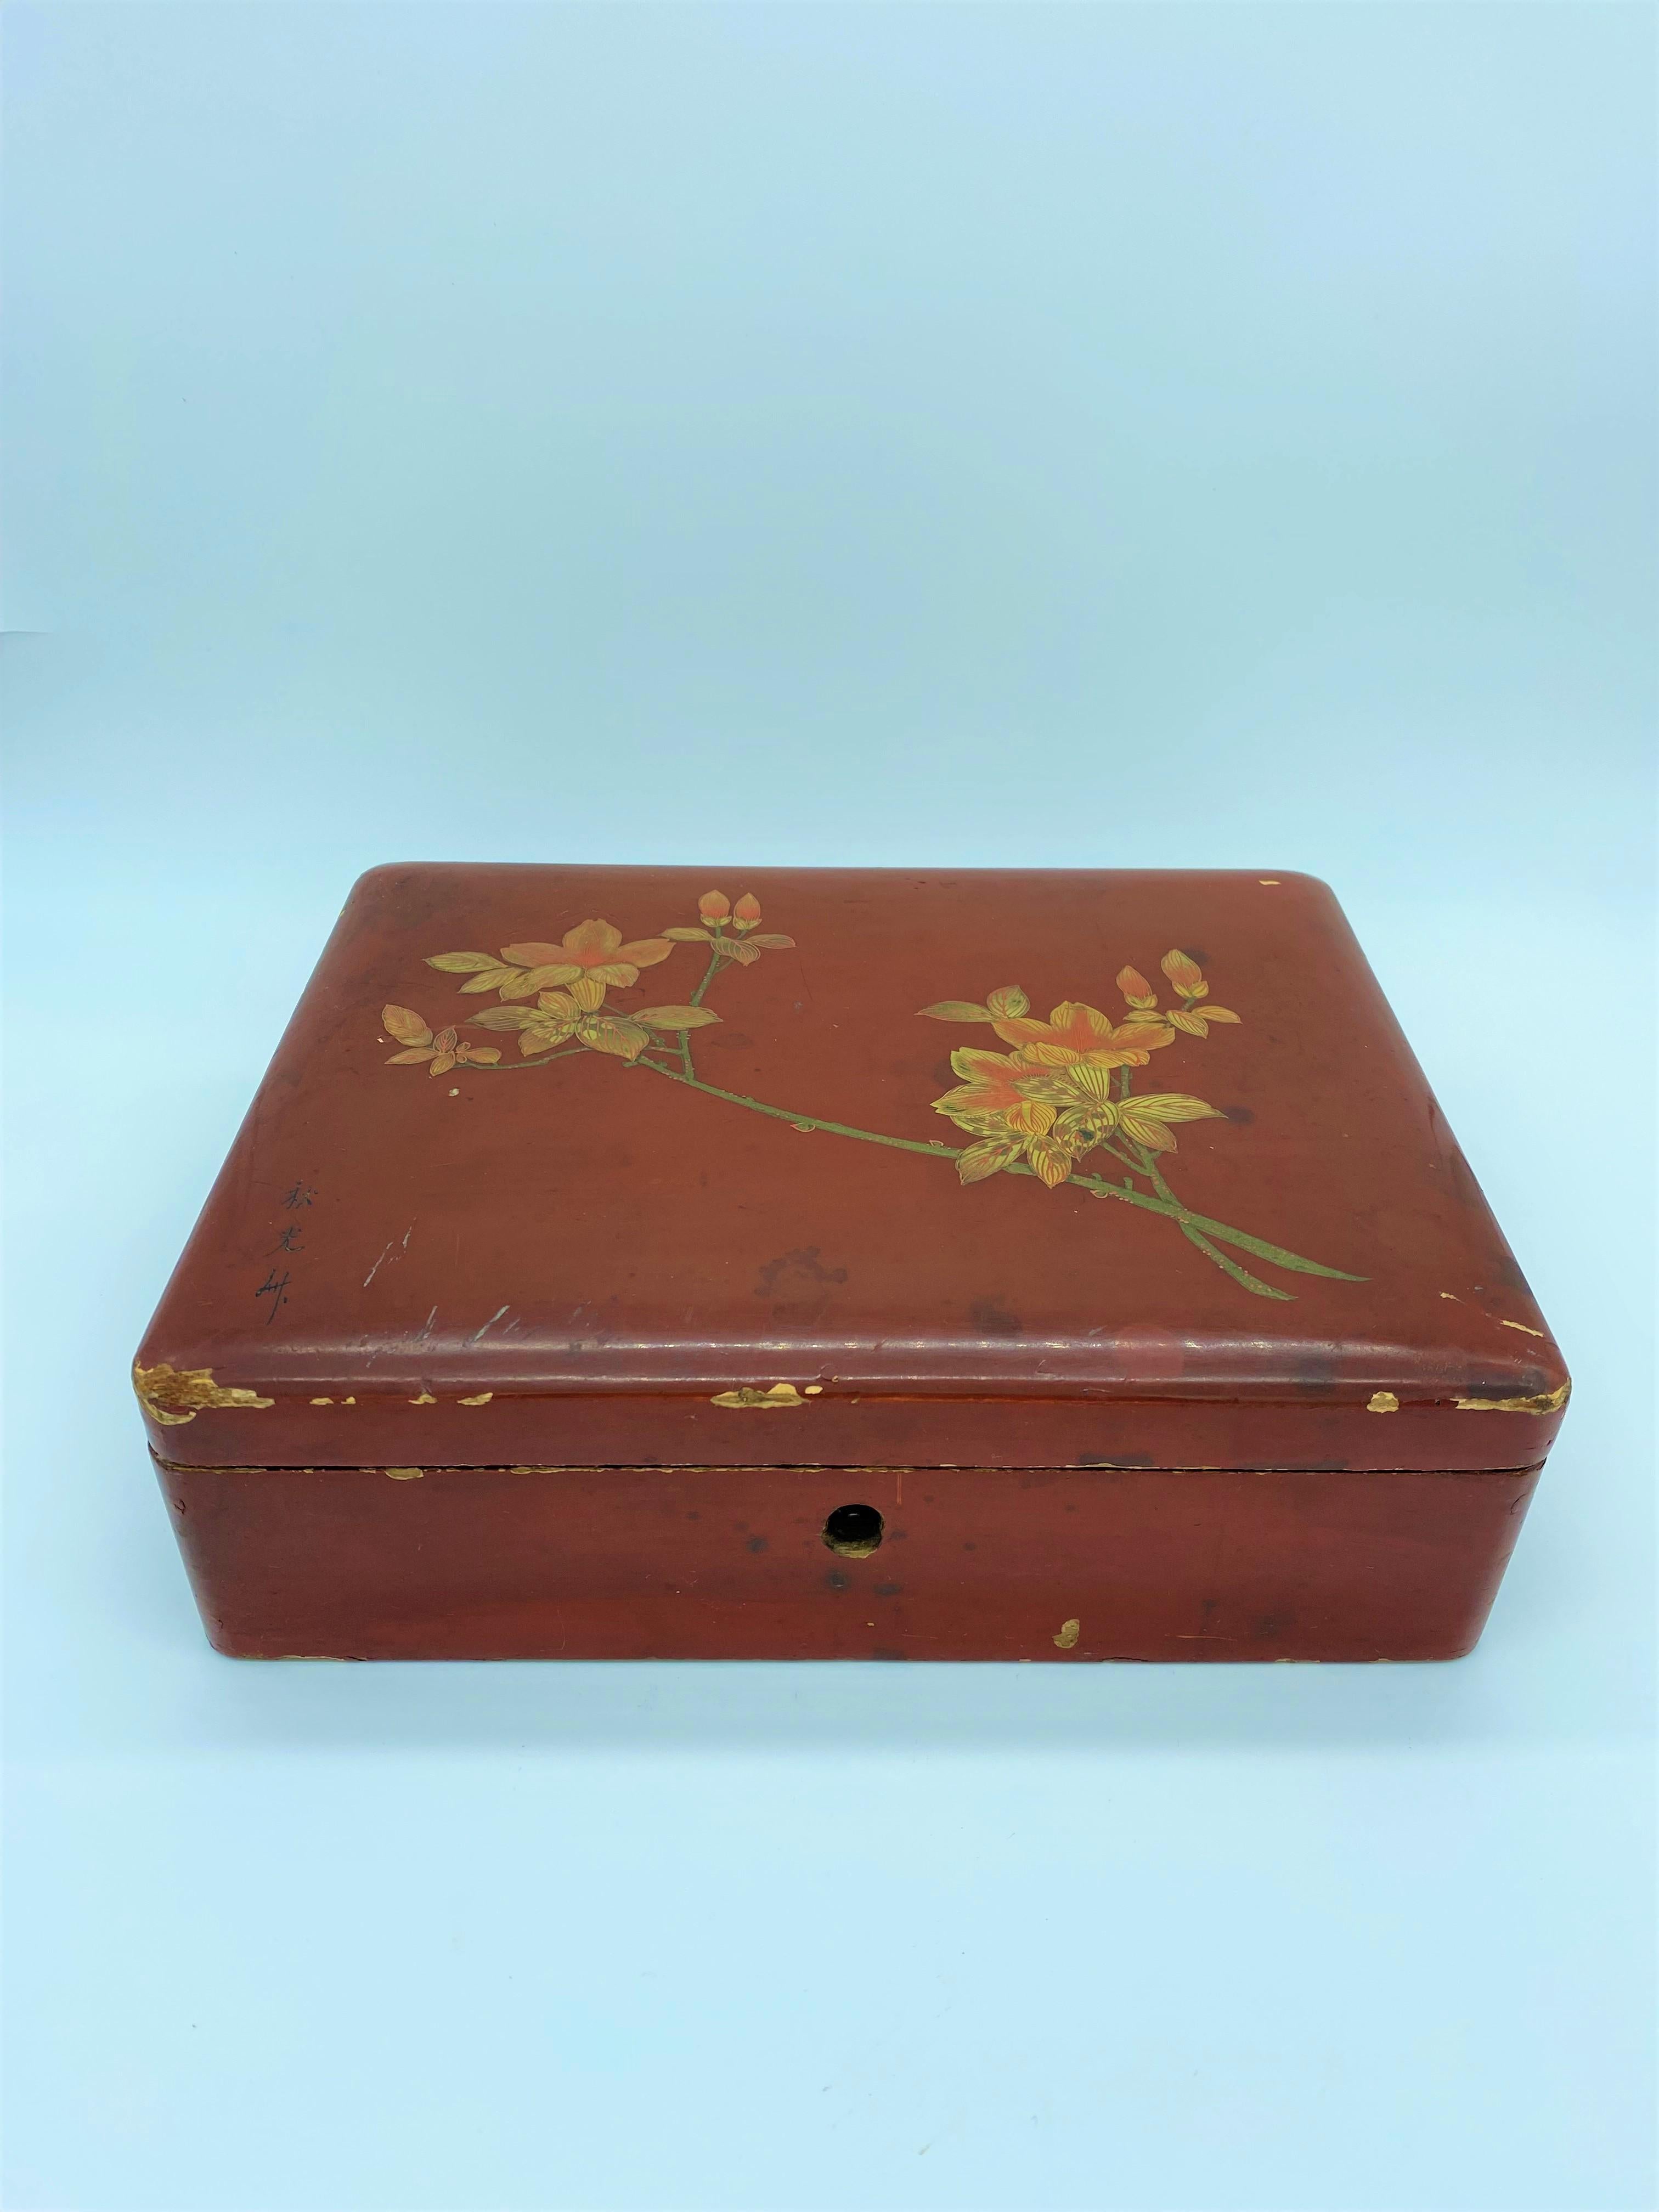 Belle boîte japonaise en bois laqué rouge. Le couvercle est décoré de branches de magnolia en fleurs et signé par l'artiste. L'intérieur de la boîte est recouvert d'une peinture chargée de paillettes d'or.
Japon Fin du 19e siècle.